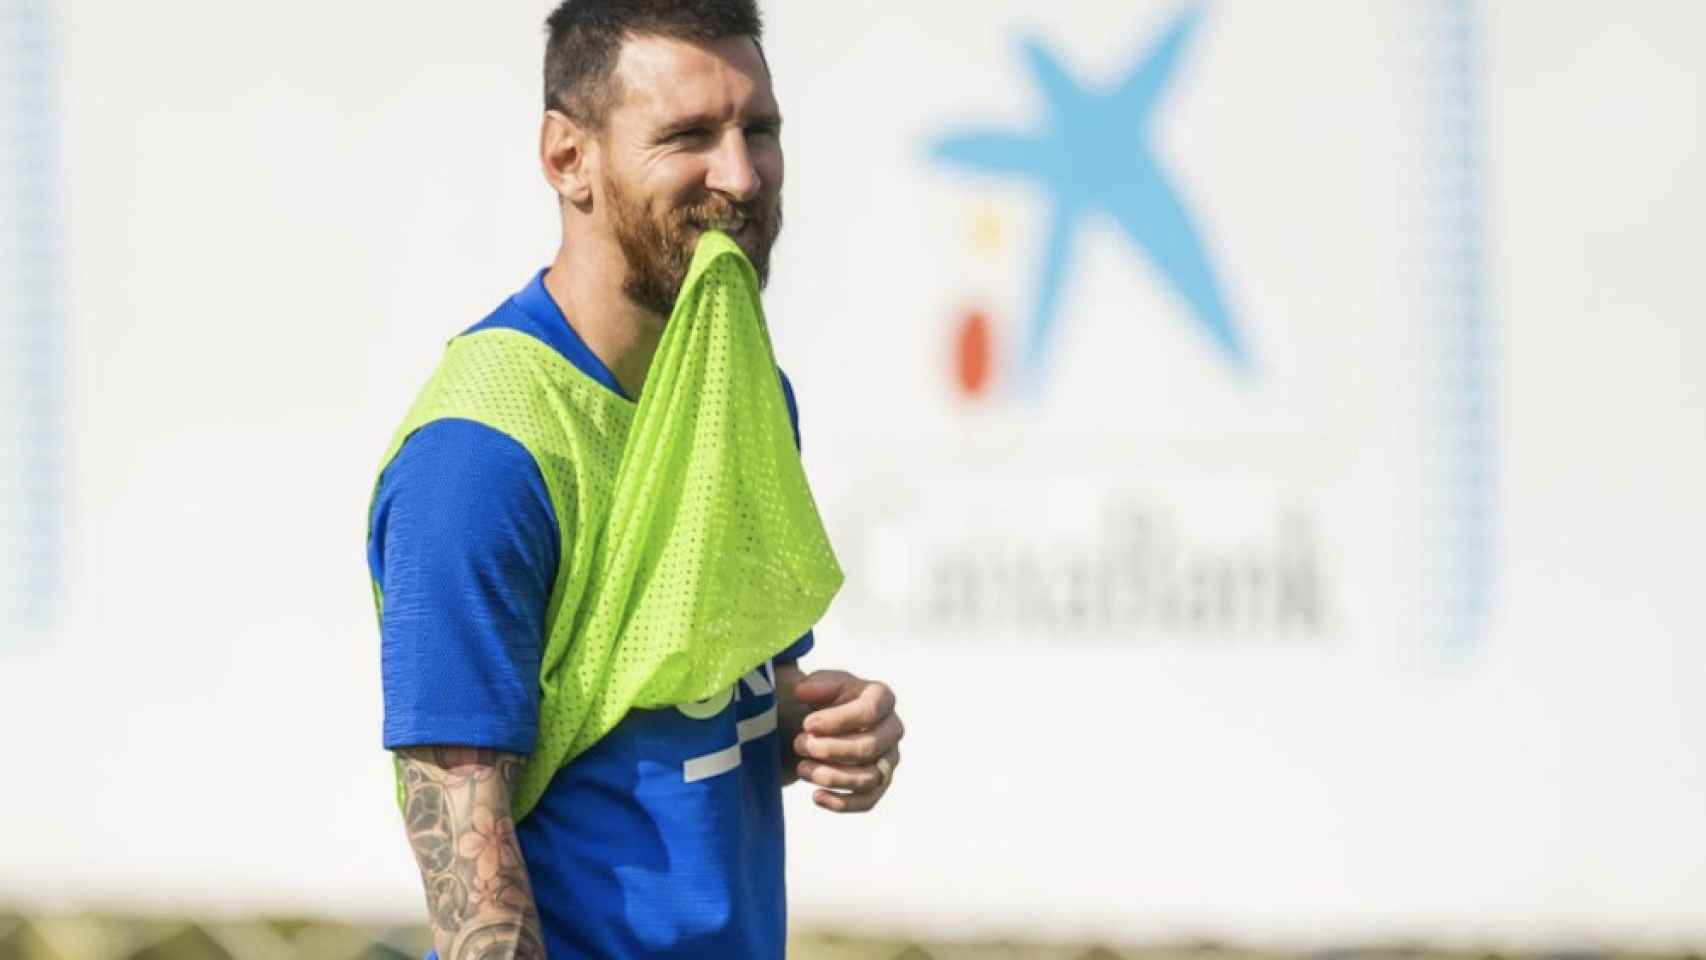 Una foto de Leo Messi durante un entrenamiento del Barça / FCB